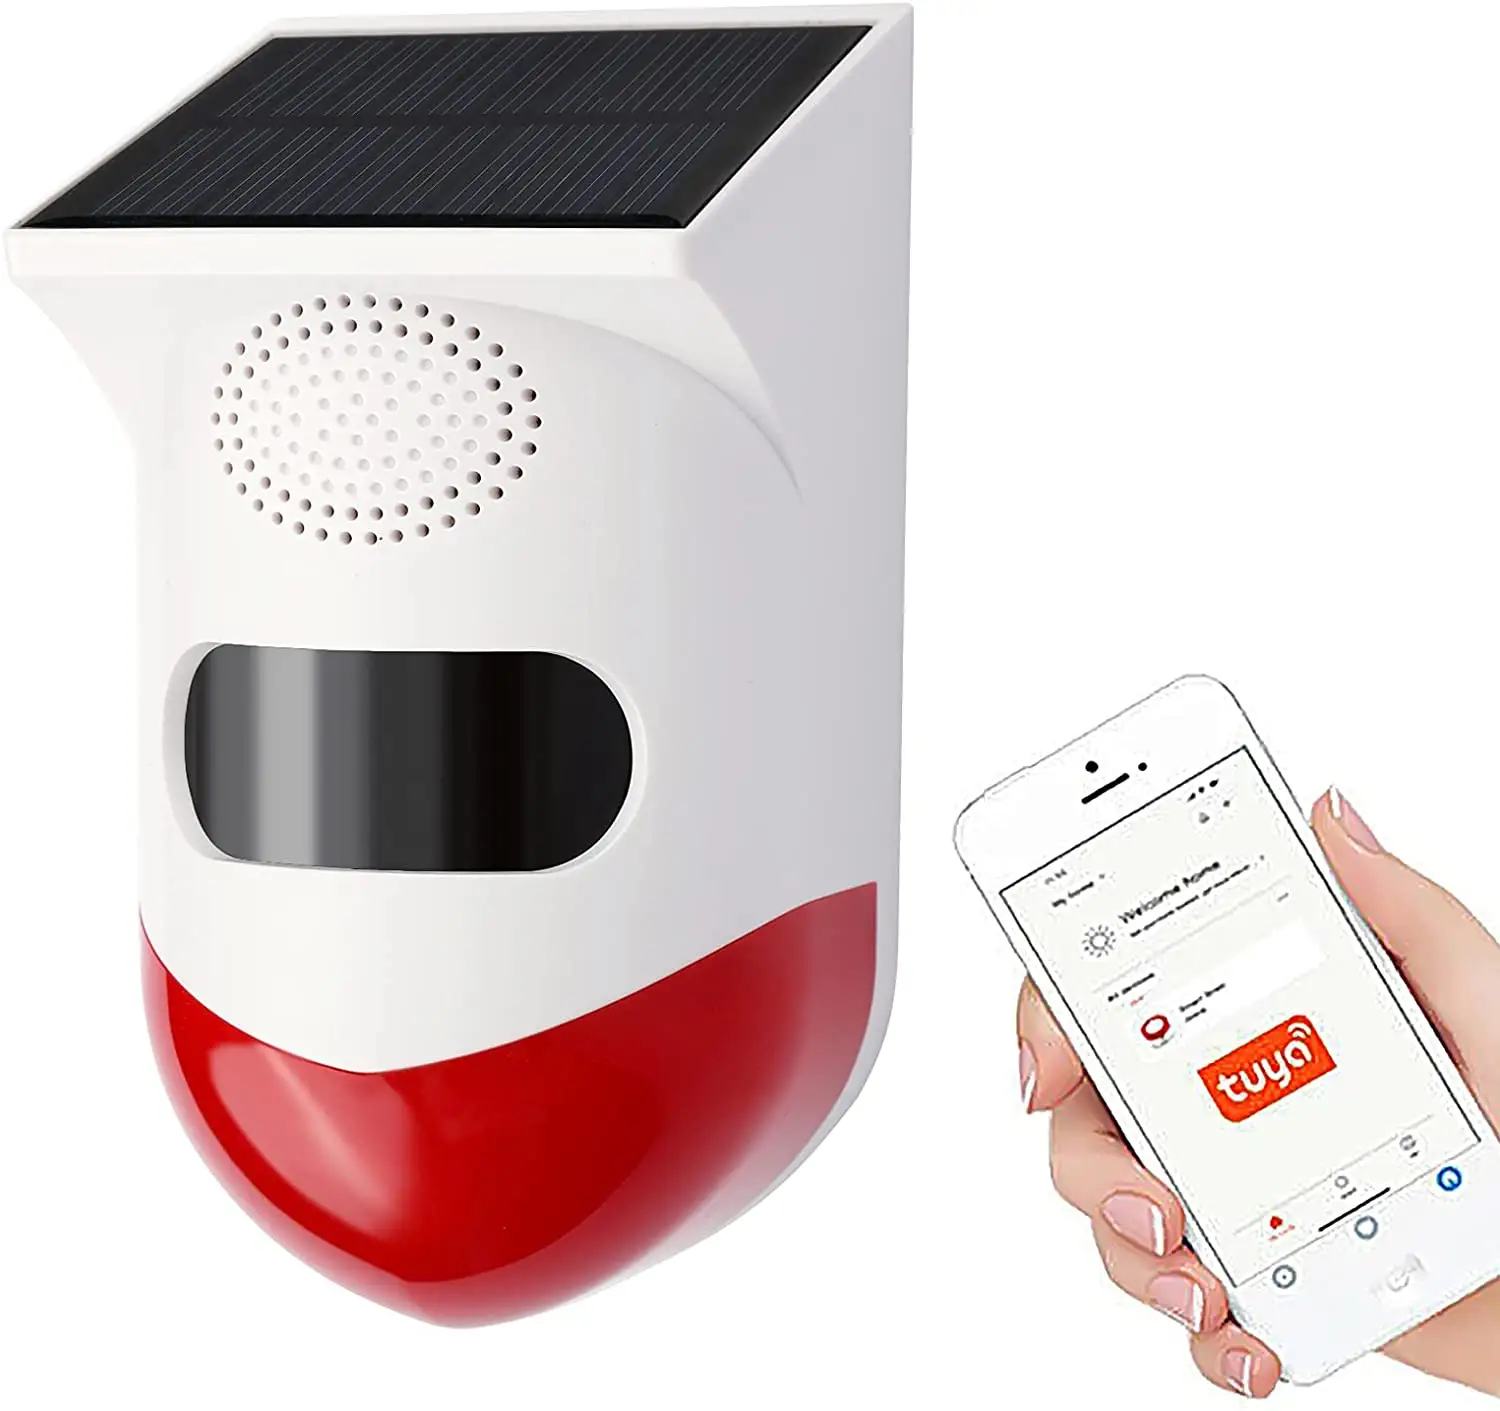 Sistema de alarma de seguridad para el hogar, alarma solar inalámbrica con monitoreo por aplicación tuya y wifi